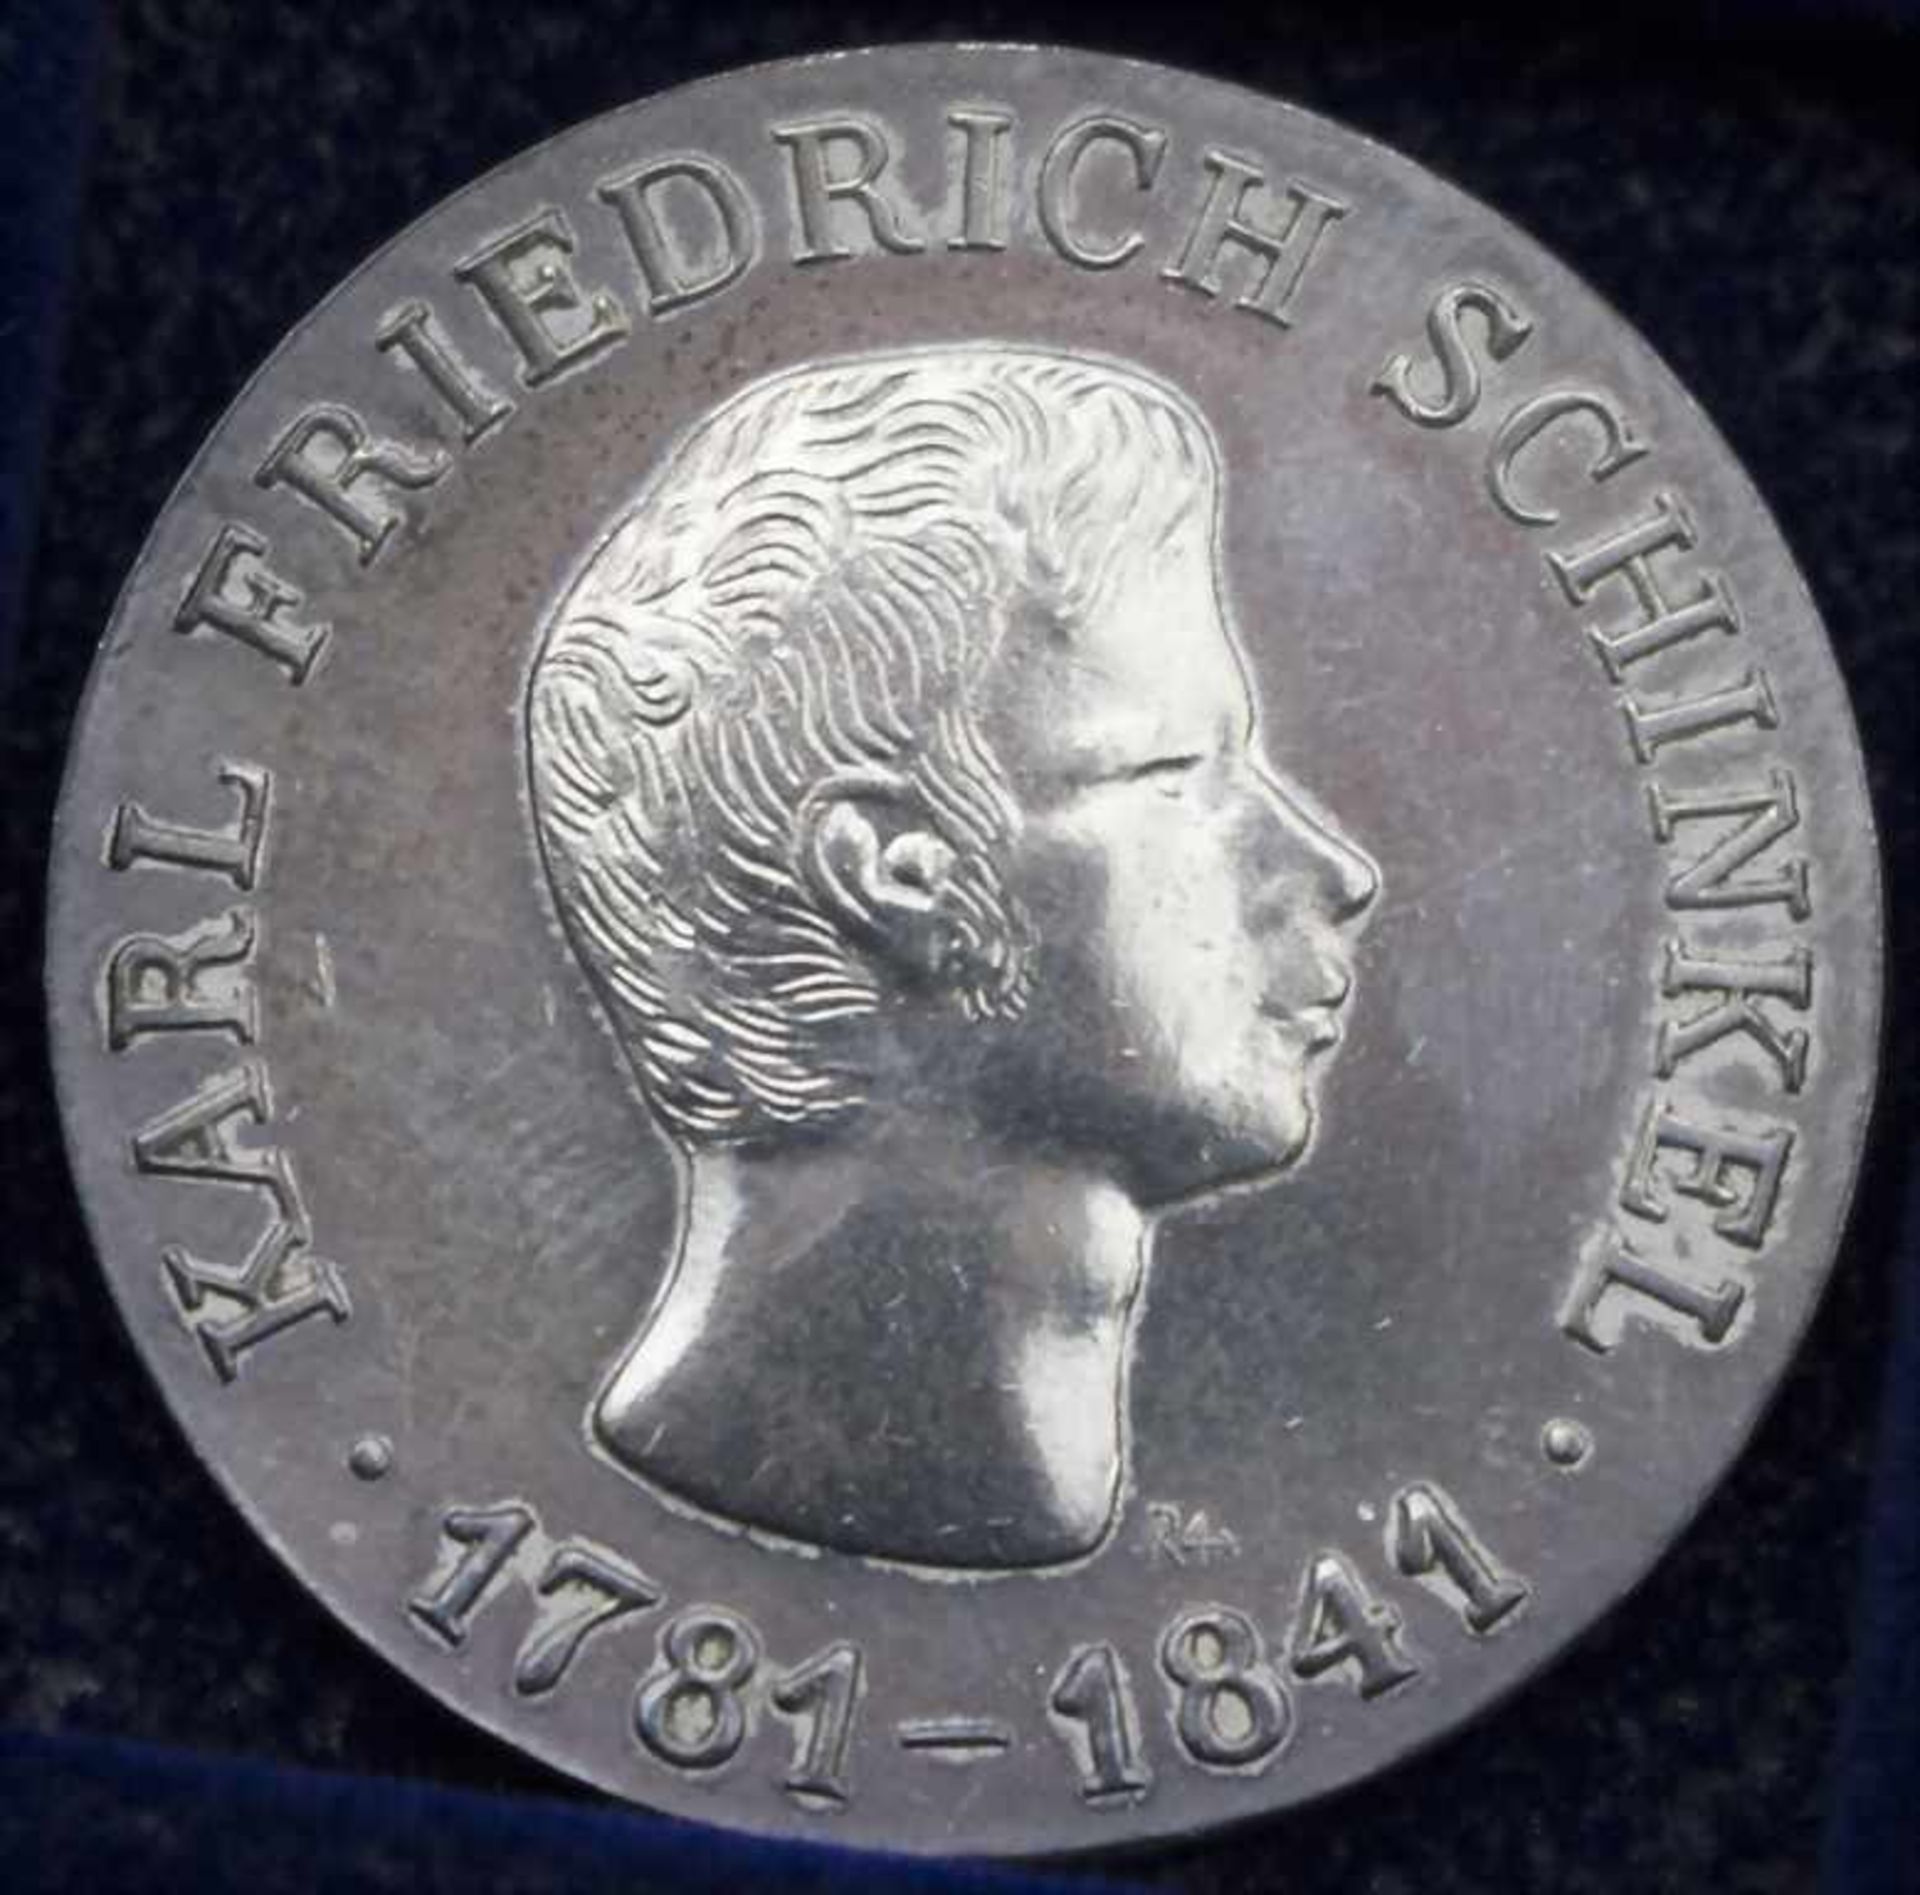 Komplette Sammlung Gedenkmünzen der DDR / Collection commemorative coins of the GDR* 5 Mark: - Bild 8 aus 22